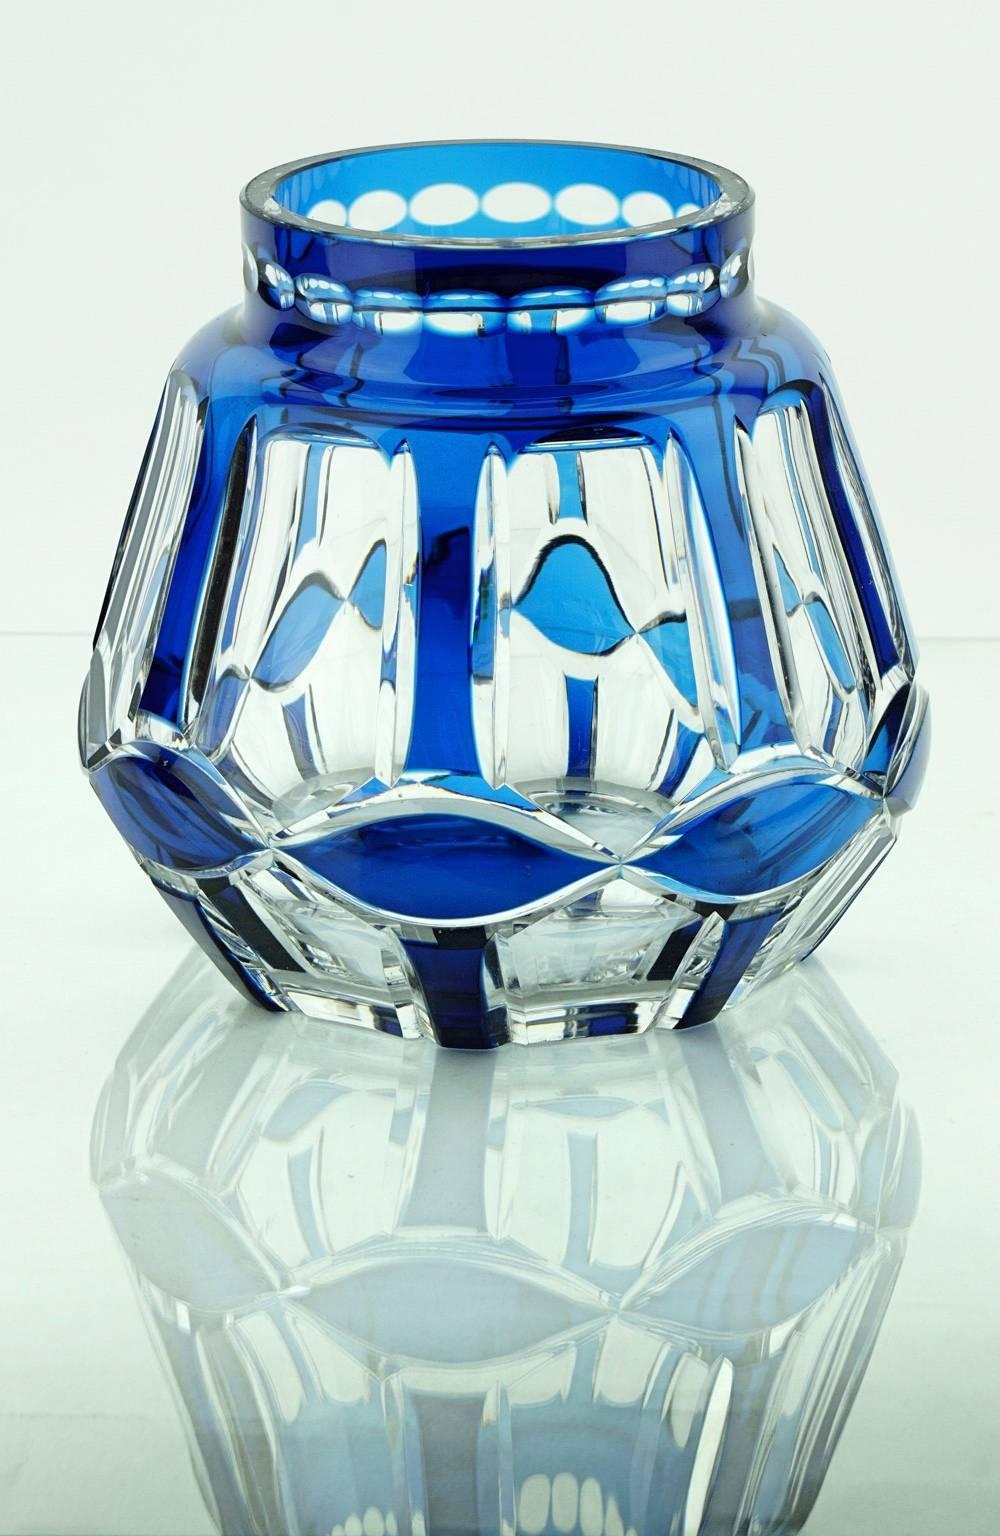 Art Deco large thick cut-glass vase flashed in blue. “Palacio” design by Val Saint Lambert.
Measures: D base 12 cm., D top 10 cm., H 16 cm.